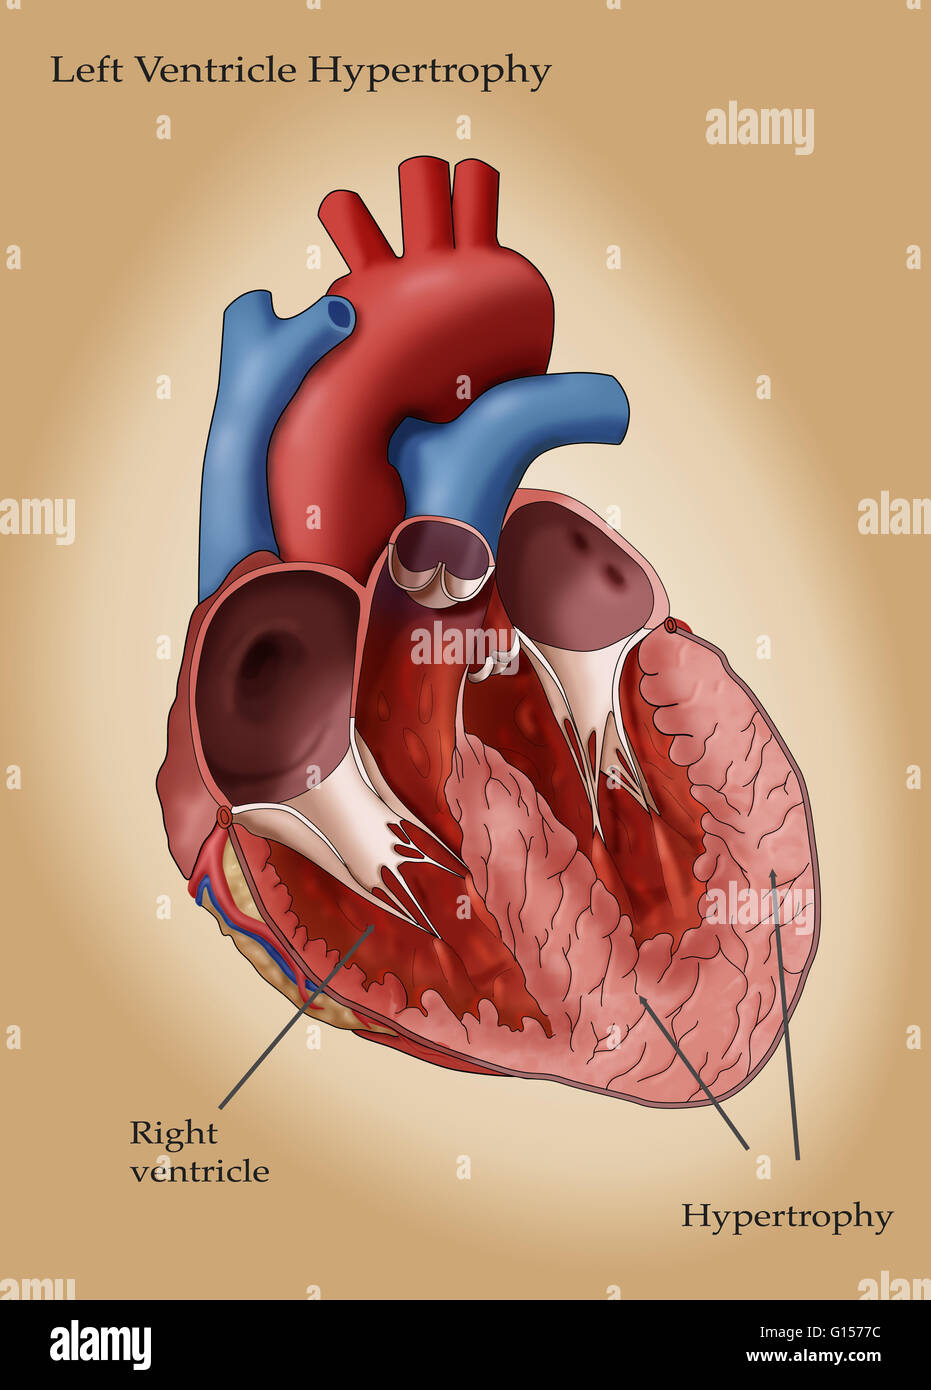 Abbildung des Herzens mit Hypertrophie des linken Ventrikels. Linken Ventrikels Hypertrophie (LHV) kann in Reaktion auf Faktoren wie Bluthochdruck entwickeln, die die linke Herzkammer, härter zu arbeiten erfordern. Die Arbeitsbelastung erhöht, die Wände des t Stockfoto